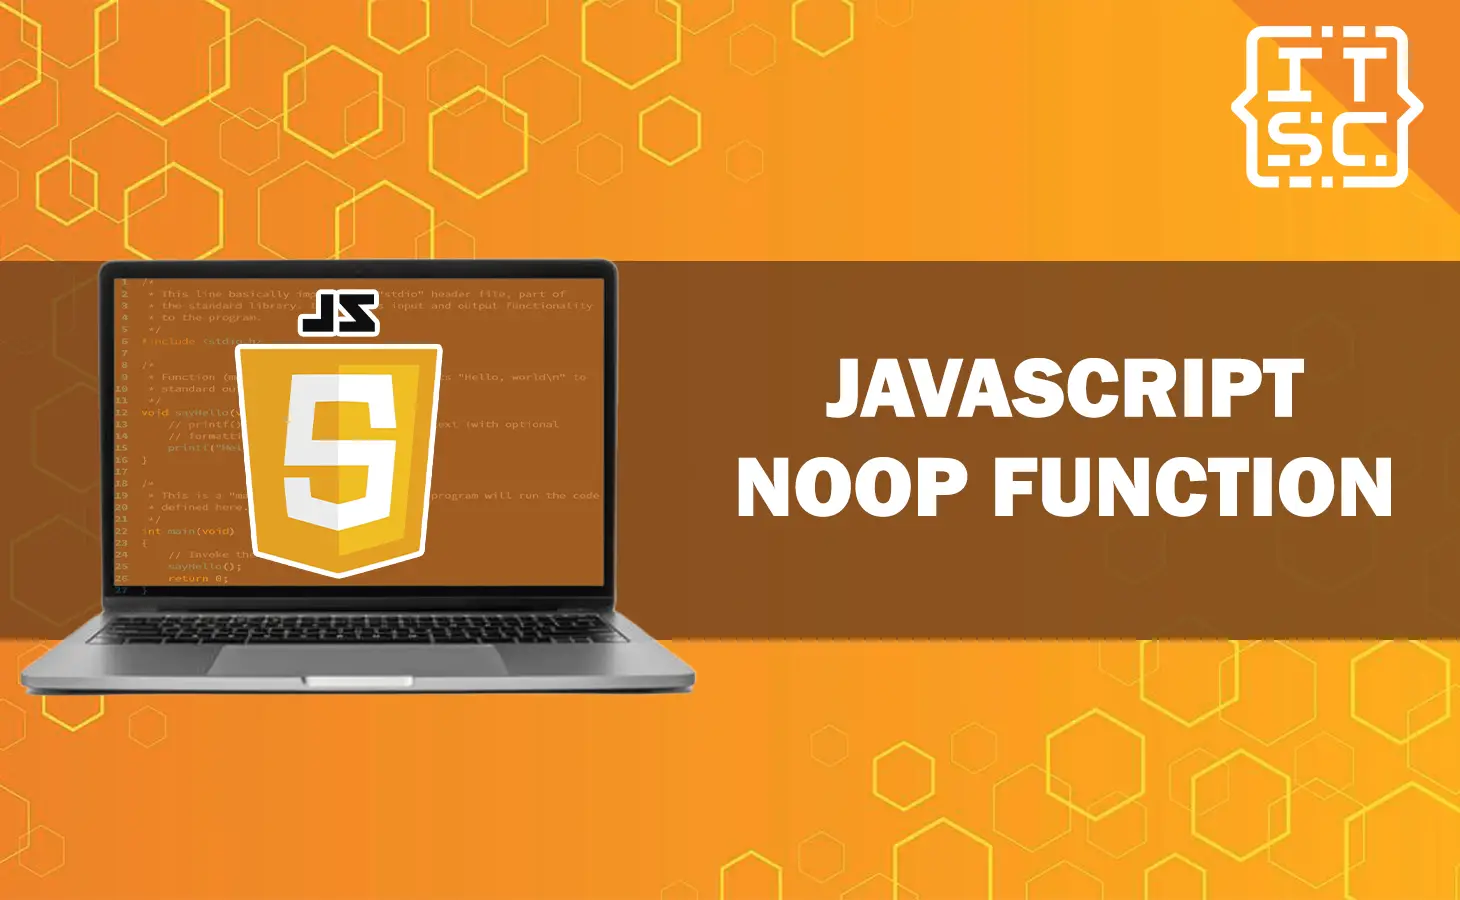 JavaScript noop function